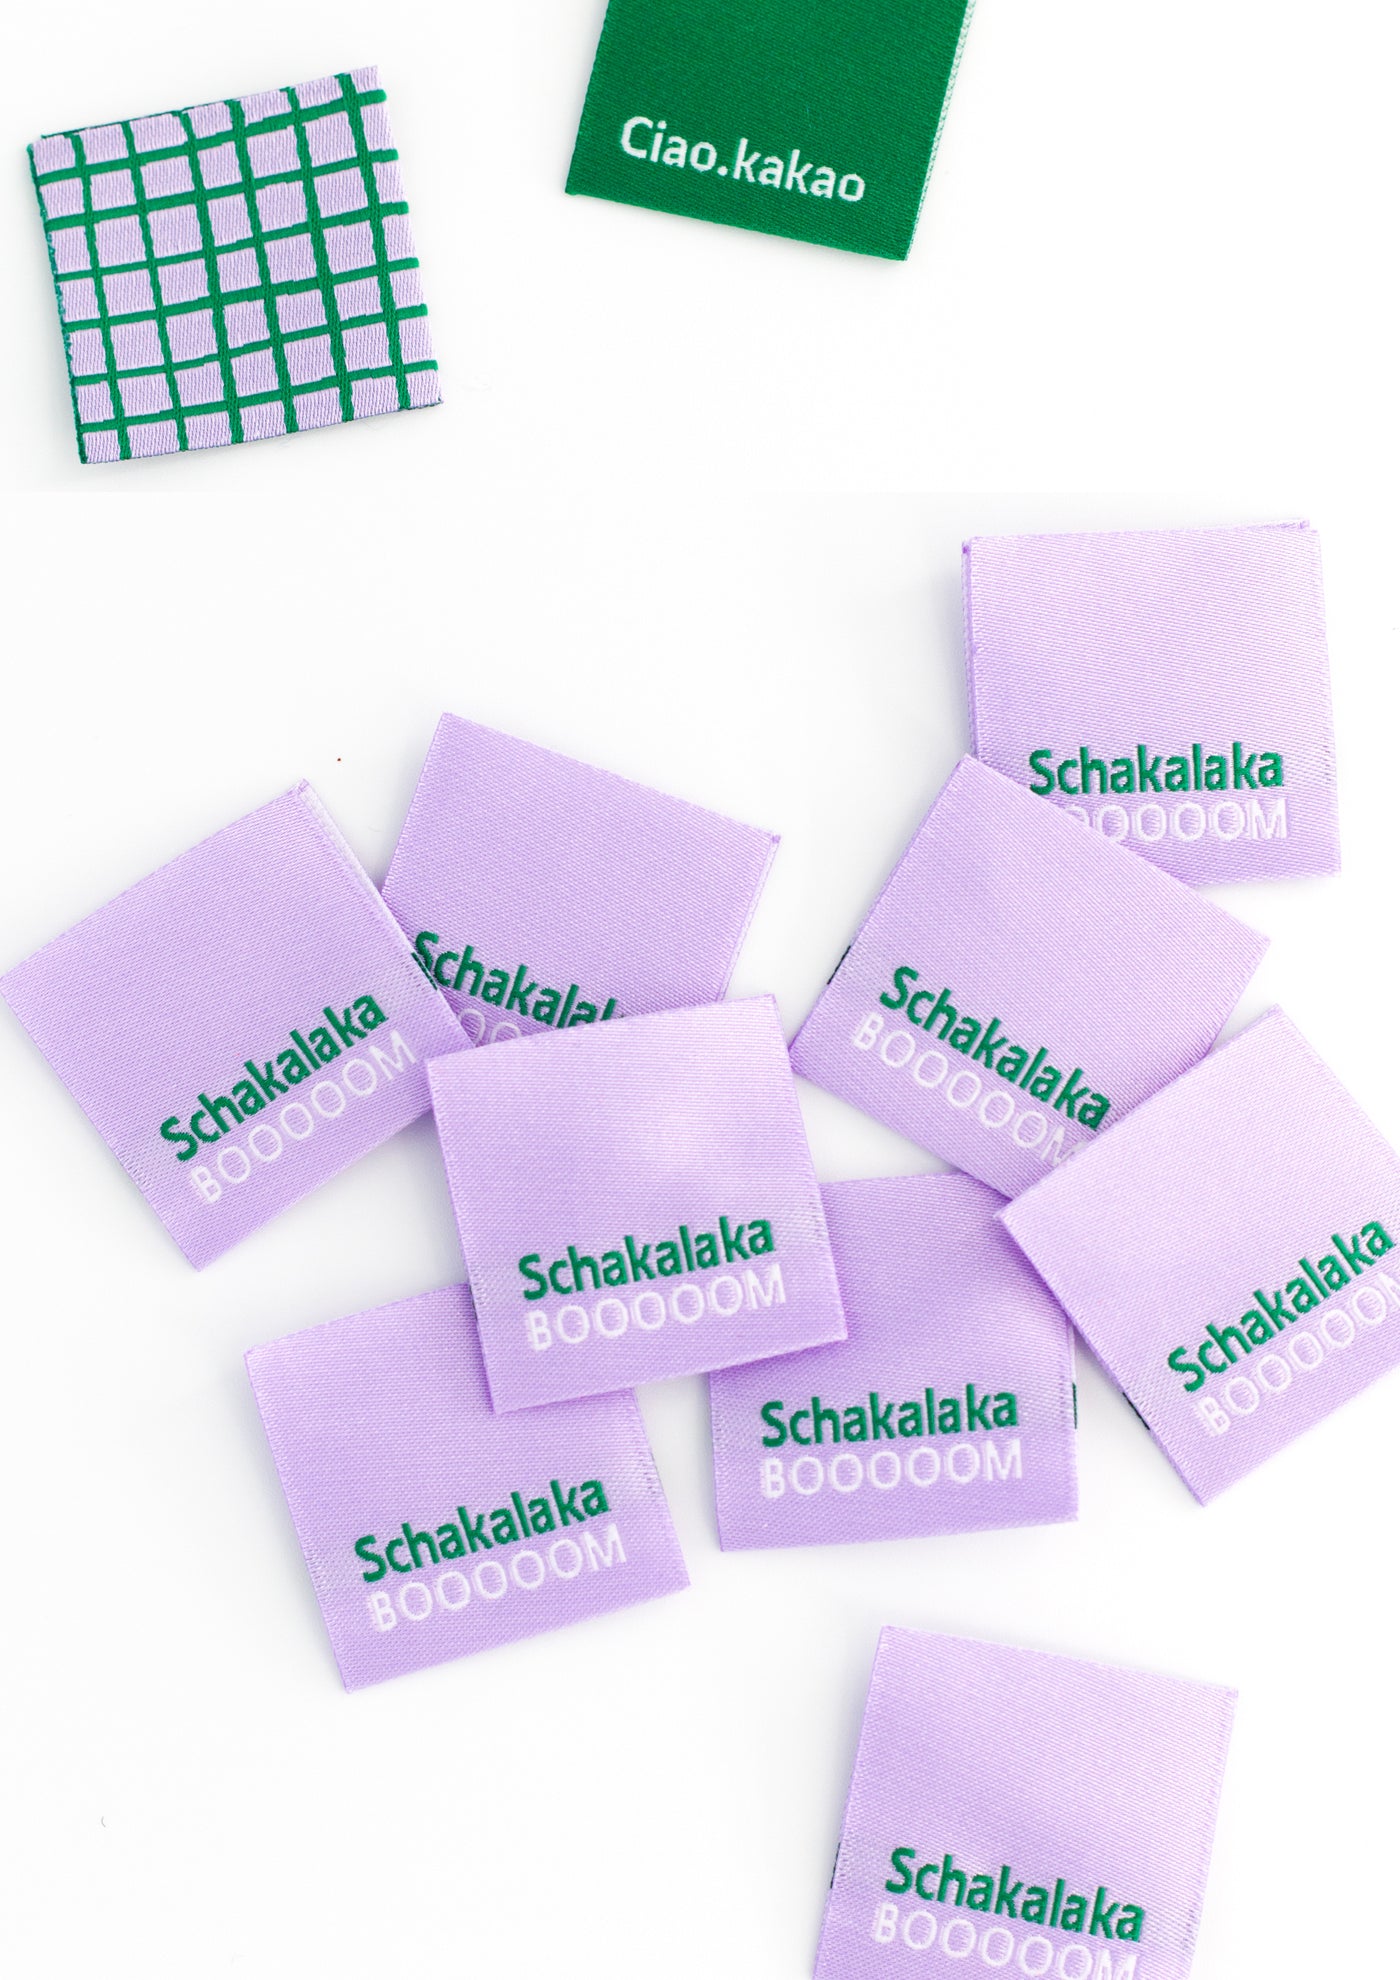 webetiketten-zum-einnaehen-in-kleidung-konfetti-patterns